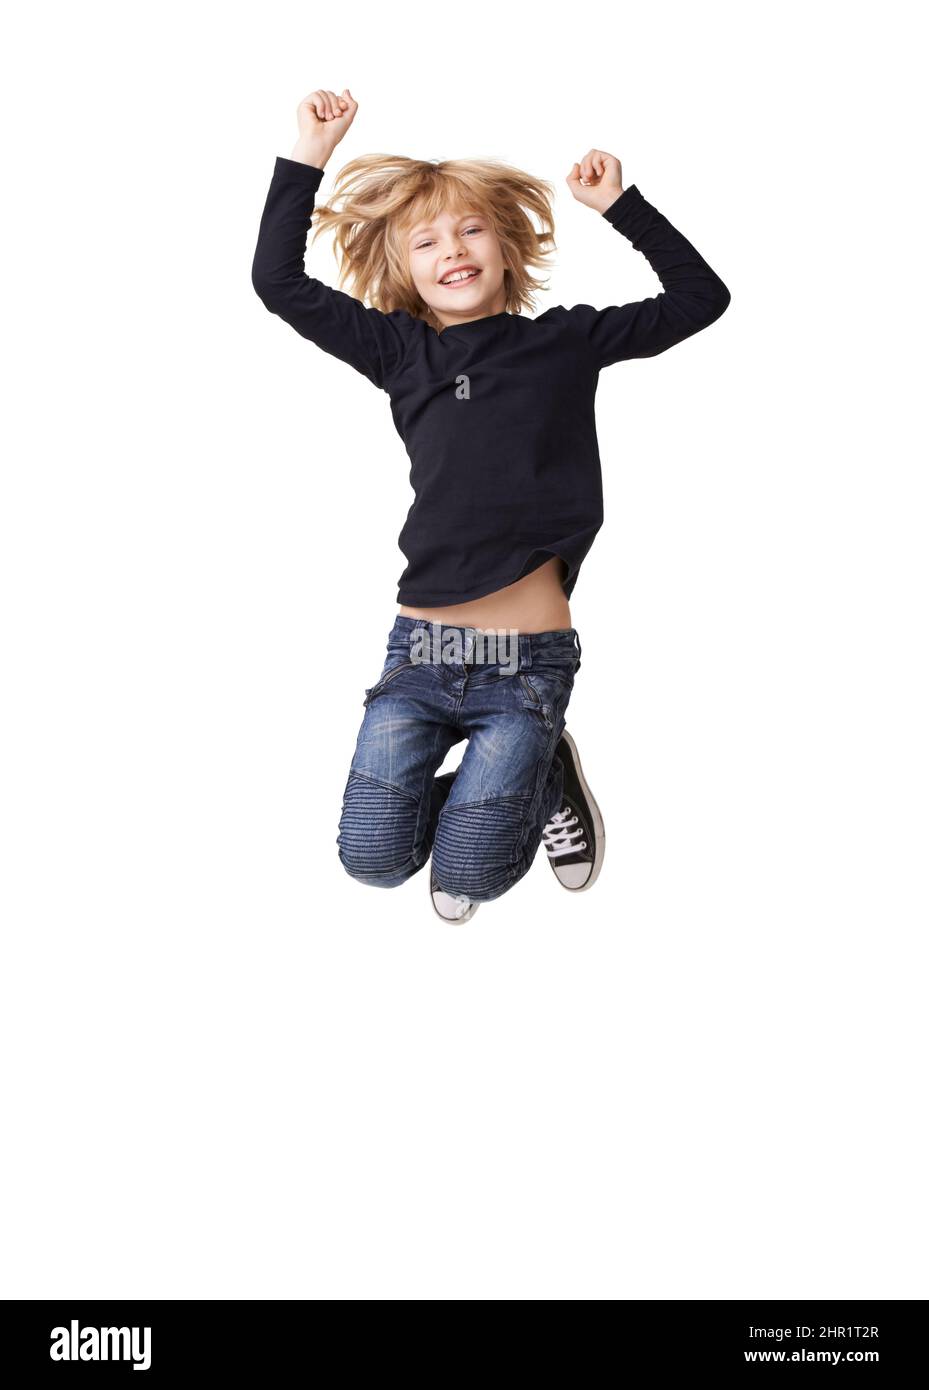 Schulen aus. Porträt eines hübschen kleinen Mädchens, das lächelt und mit in der Luft erhobenen Armen vor weißem Hintergrund springt. Stockfoto